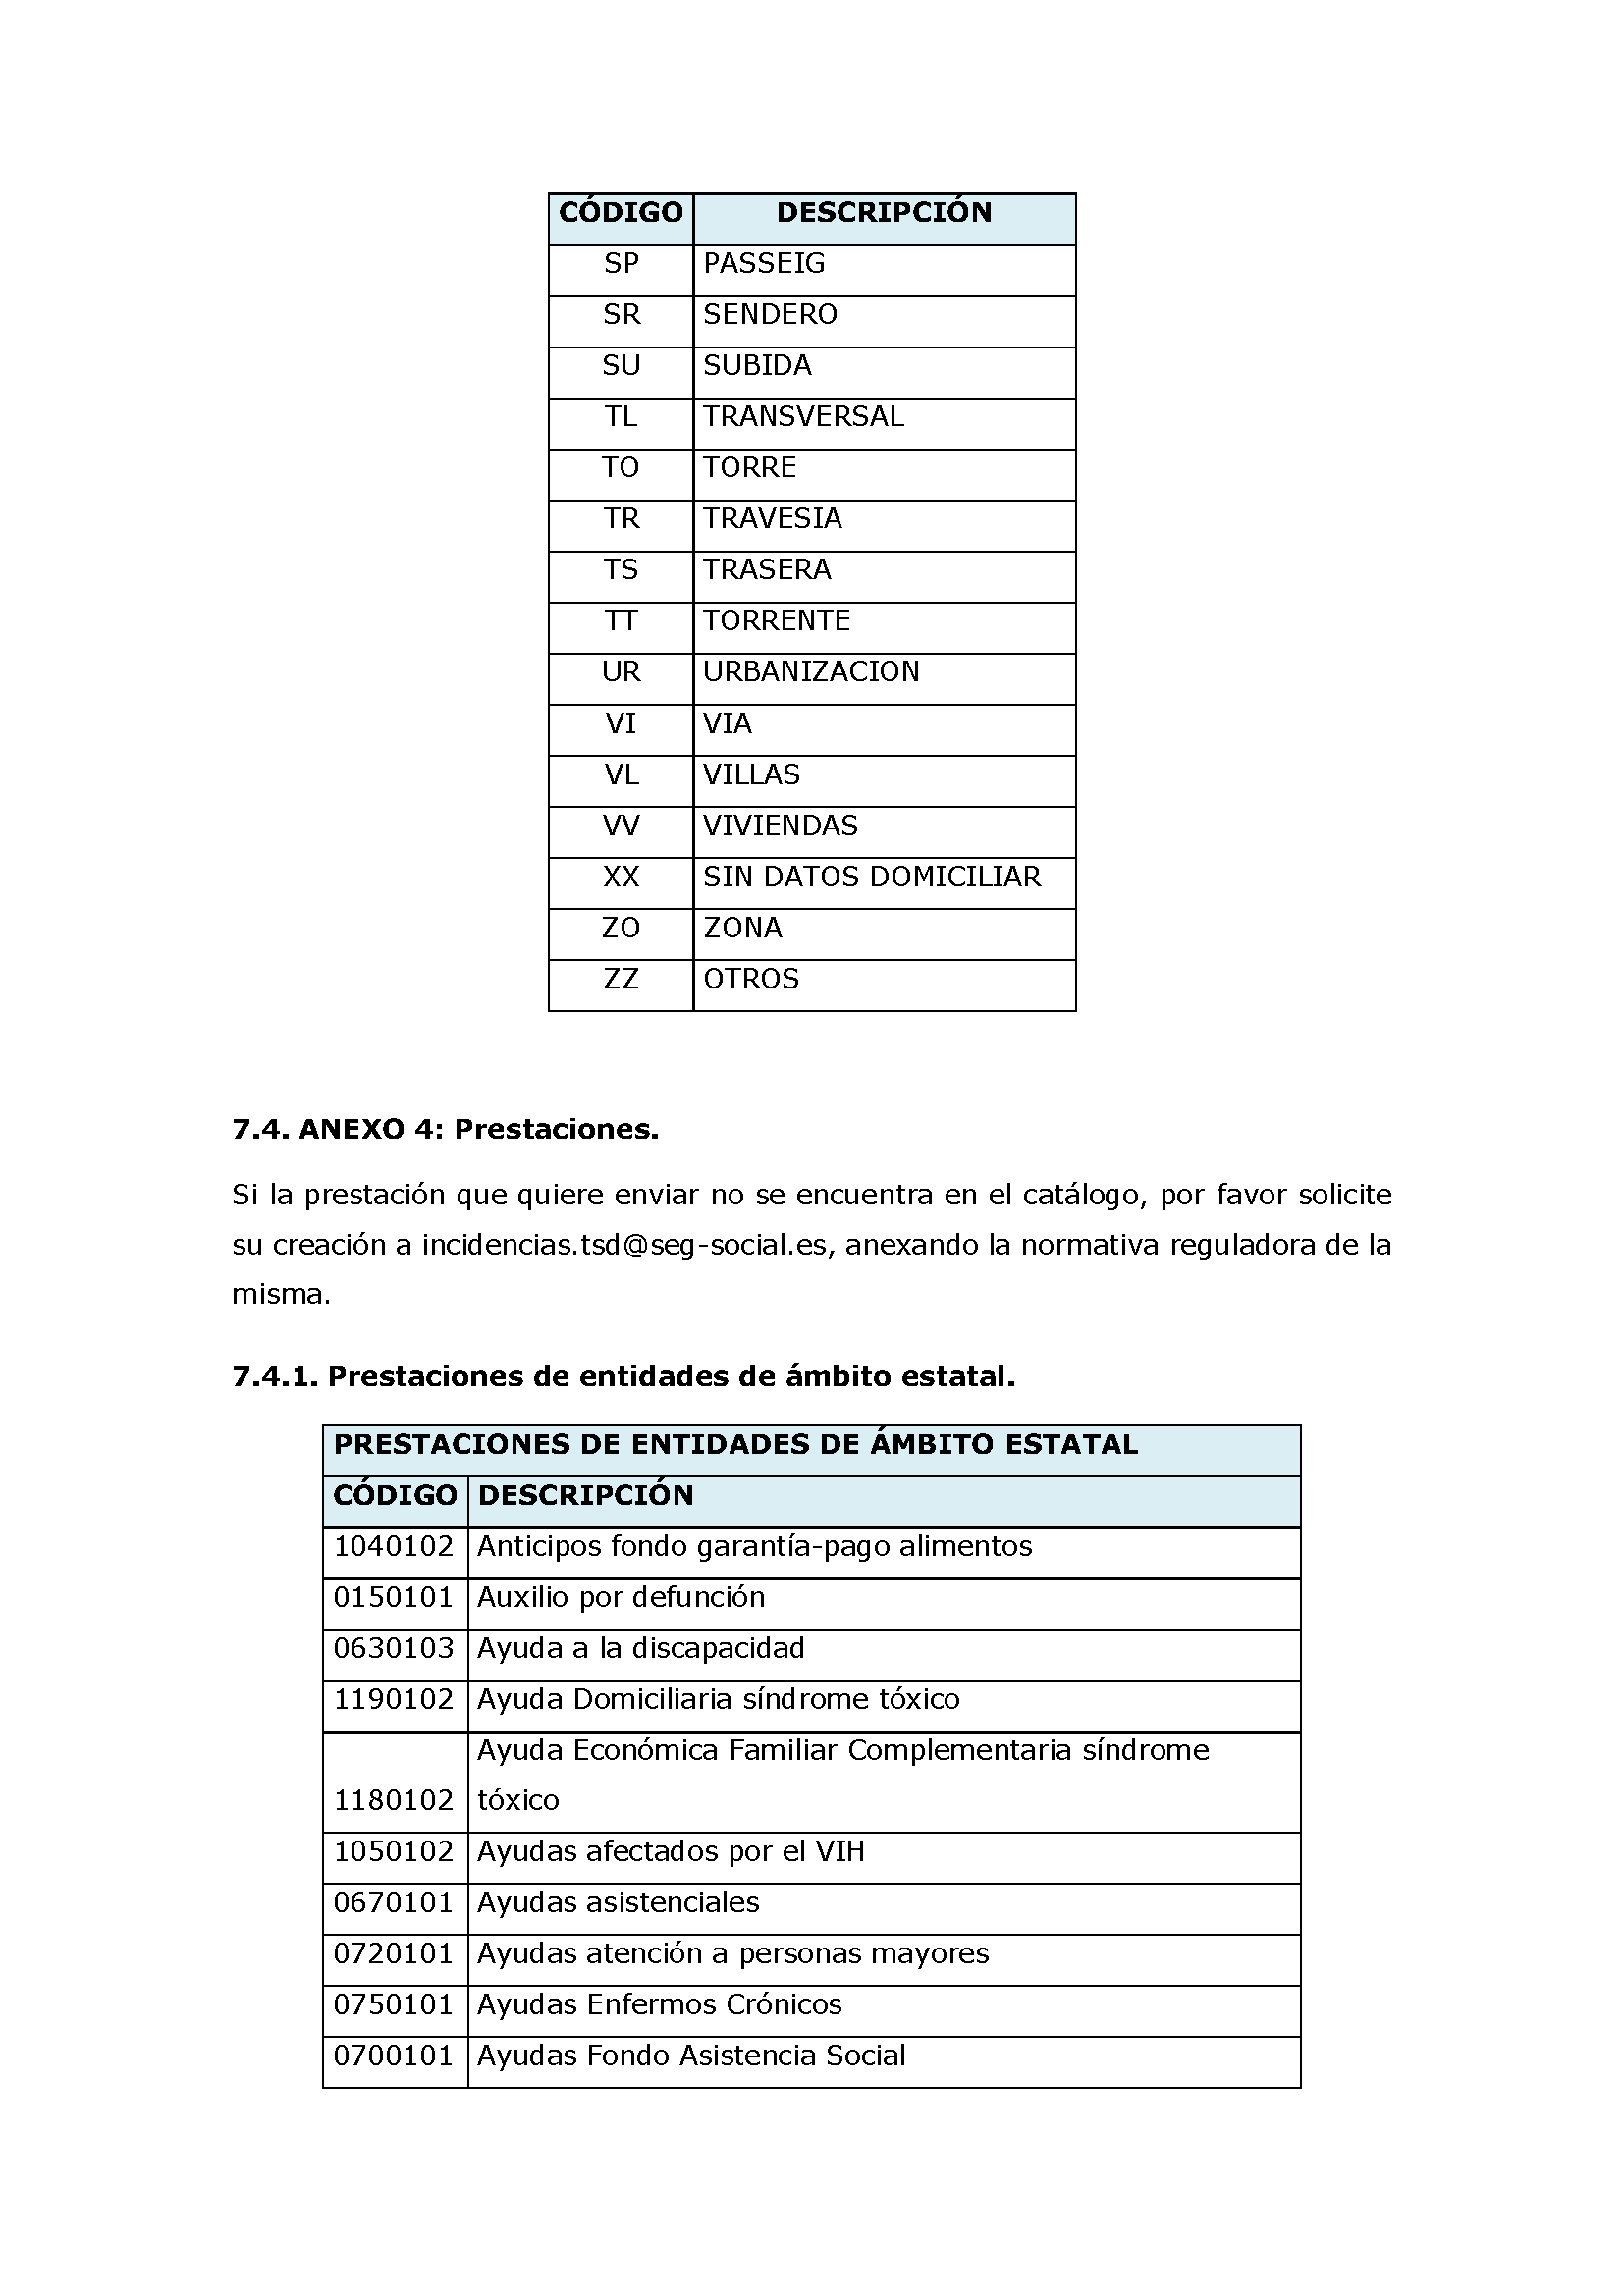 ANEXOS PROTOCOLO DE INTERCAMBIO DE FICHEROS PARA LA CARGA DE DATOS EN TARJETA SOCIAL DIGITAL Pag 84